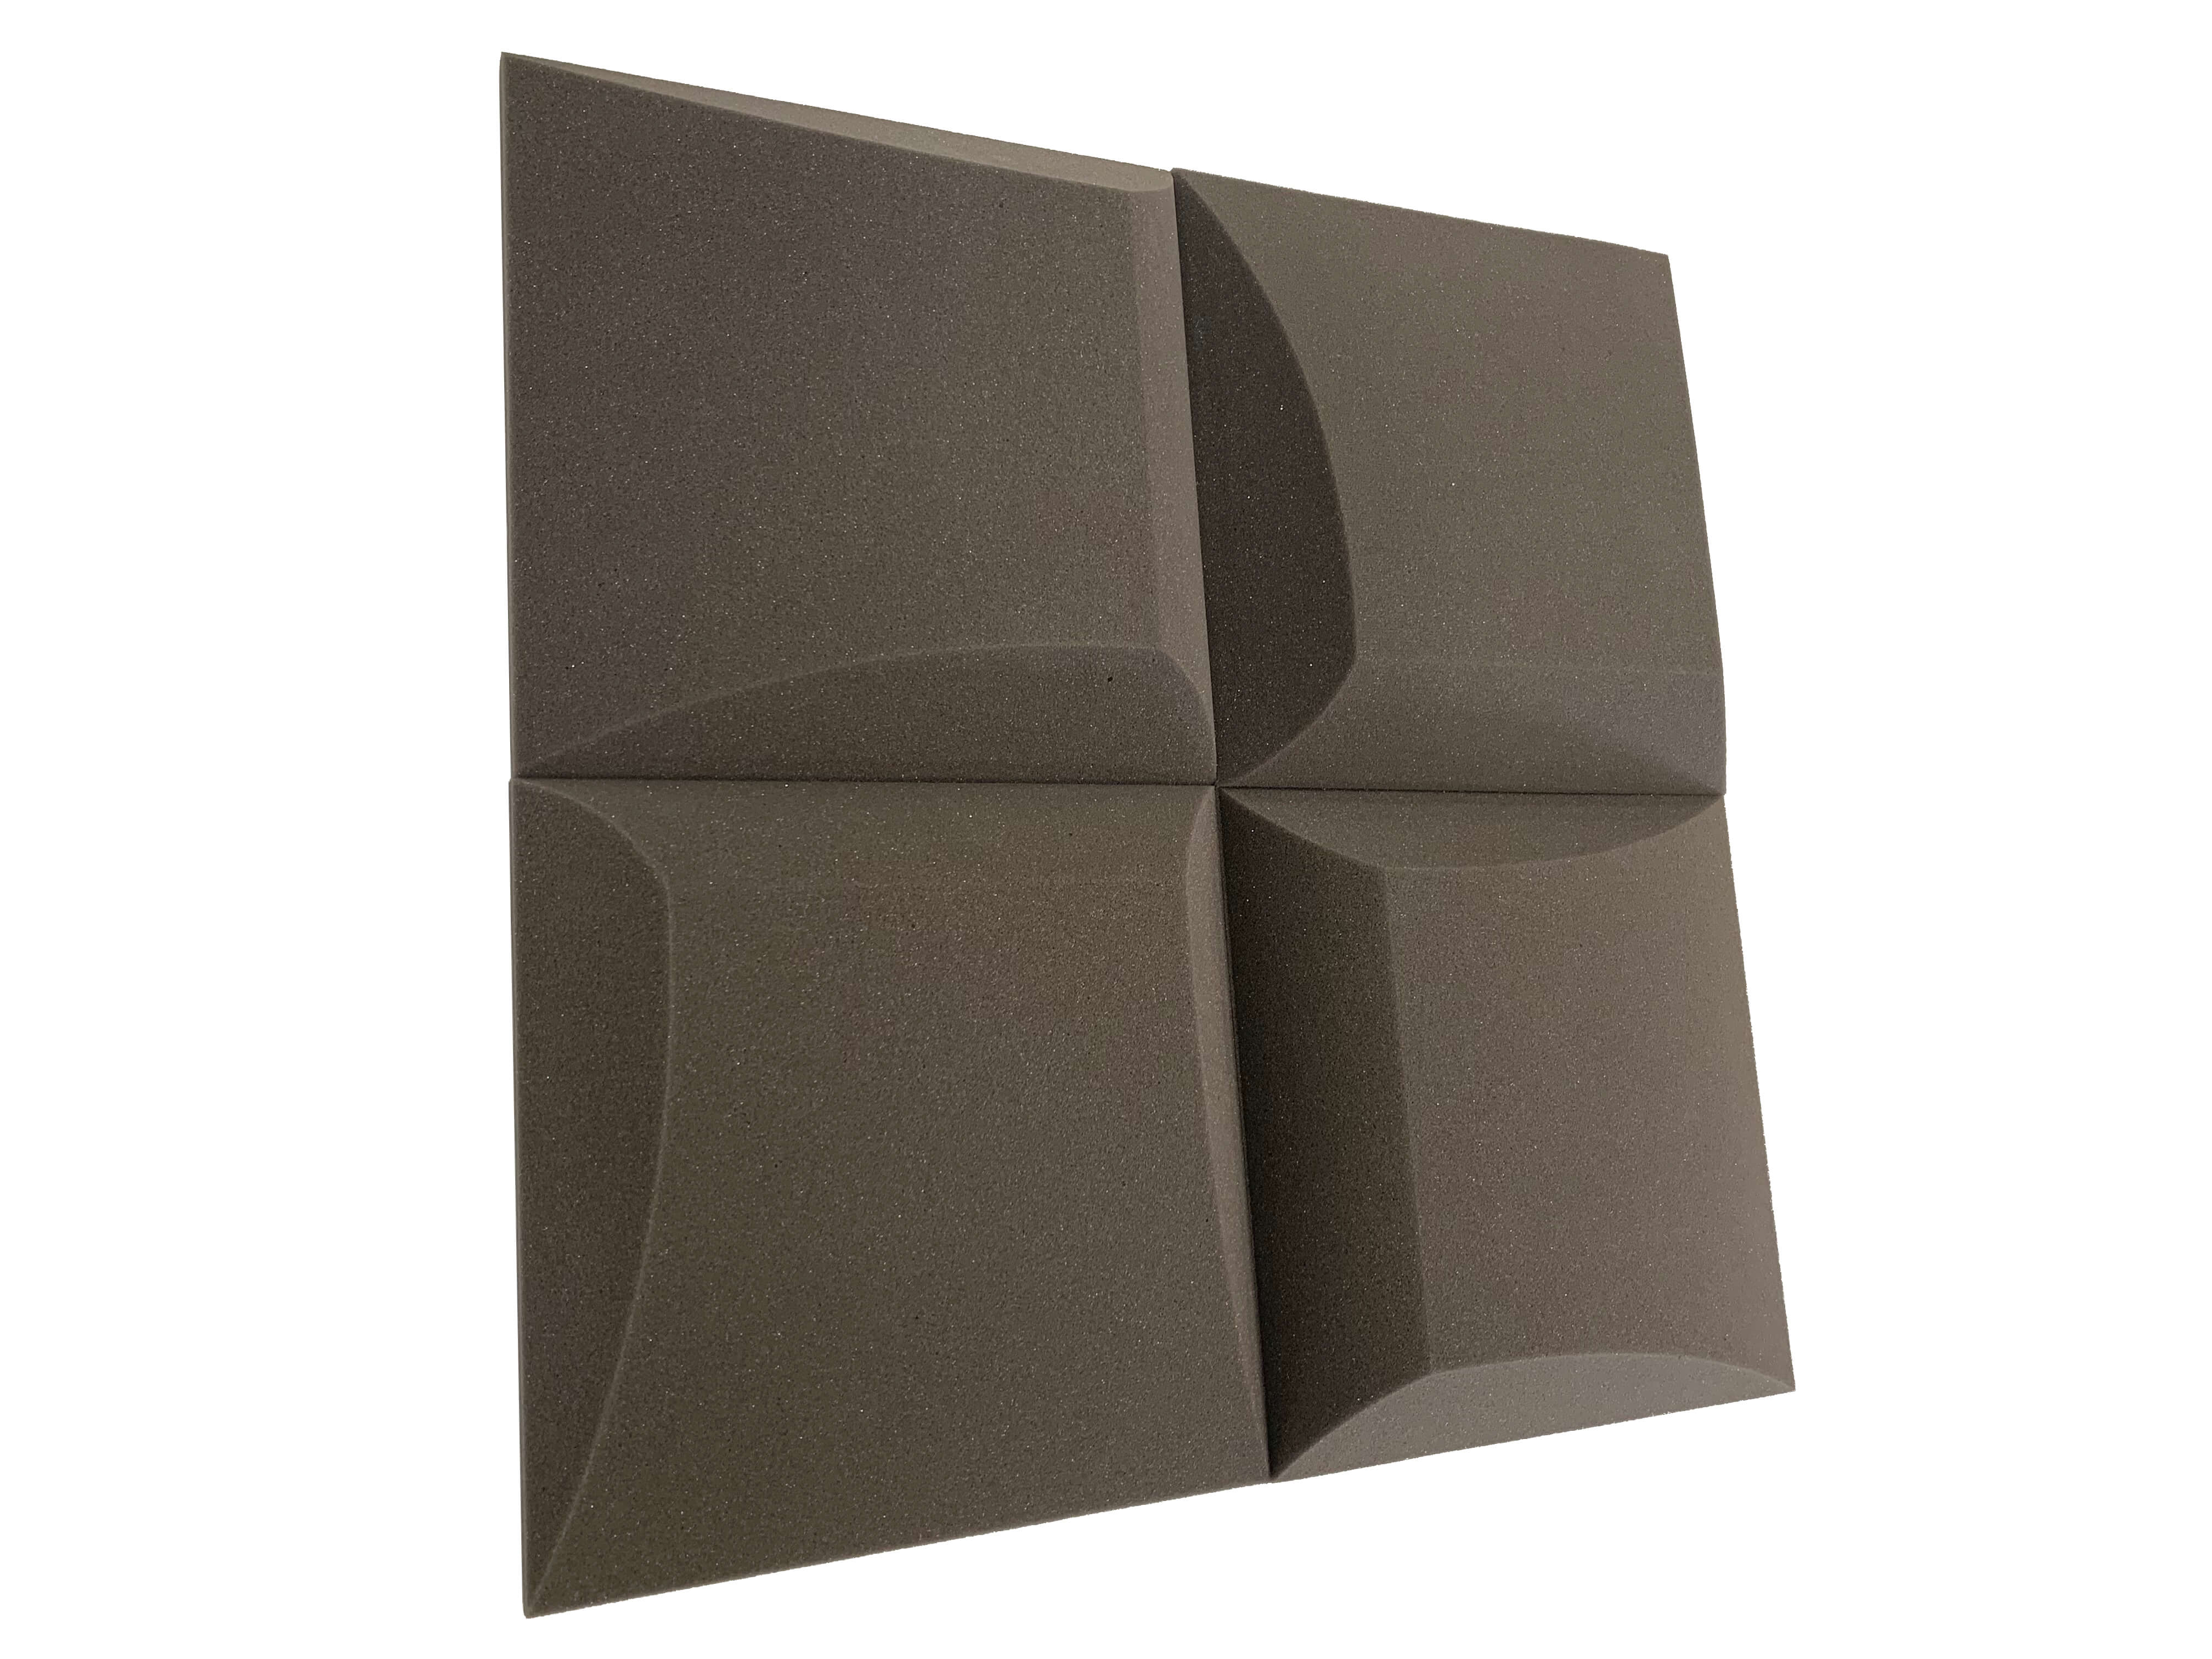 AeroFoil 12" Acoustic Studio Foam Tile Pack - 12 Tiles, 1.1qm Coverage-9